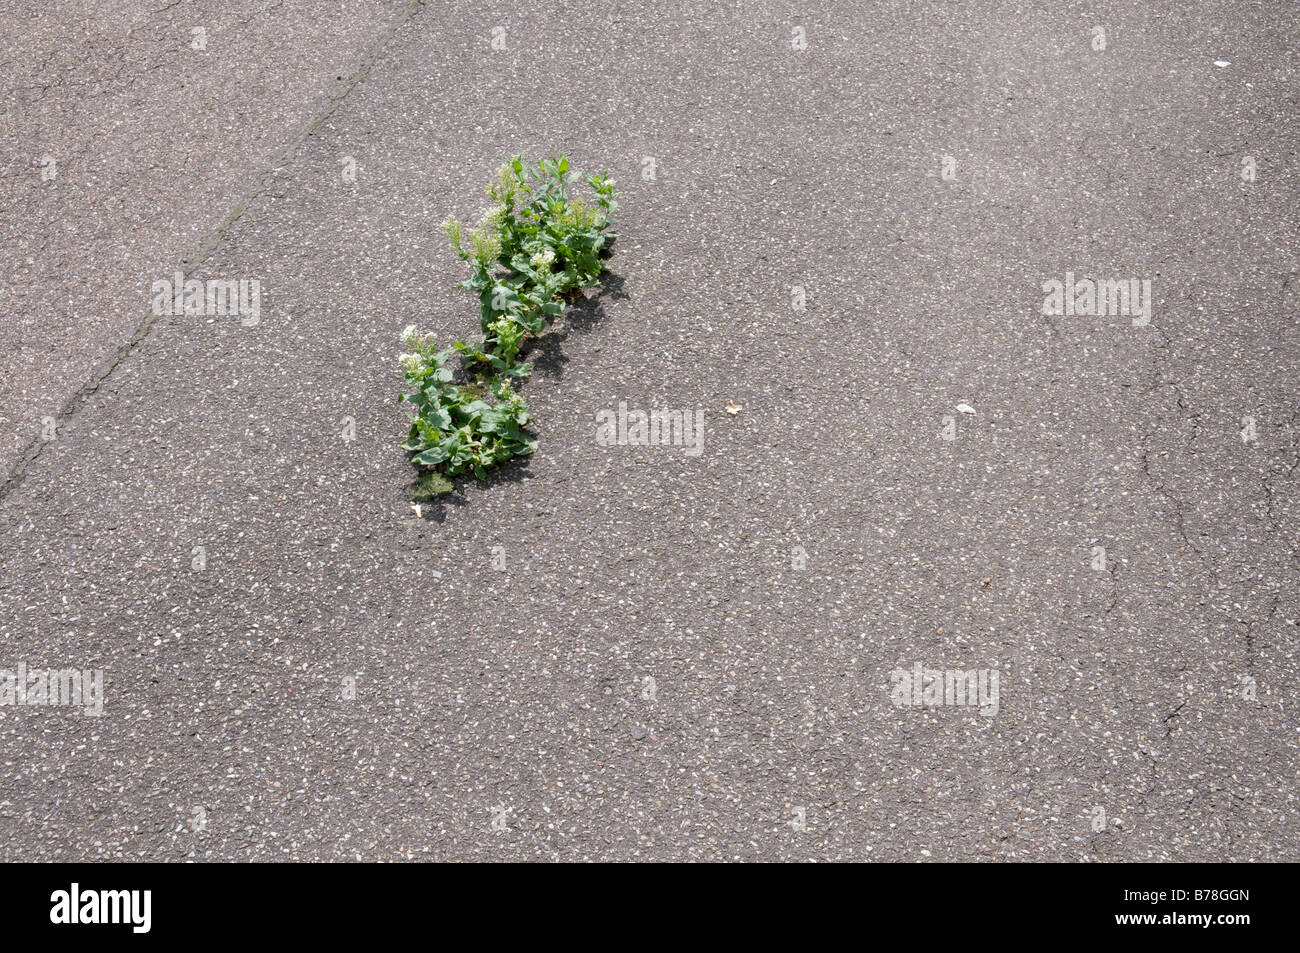 Plante qui pousse sur l'asphalte, elevated view Banque D'Images